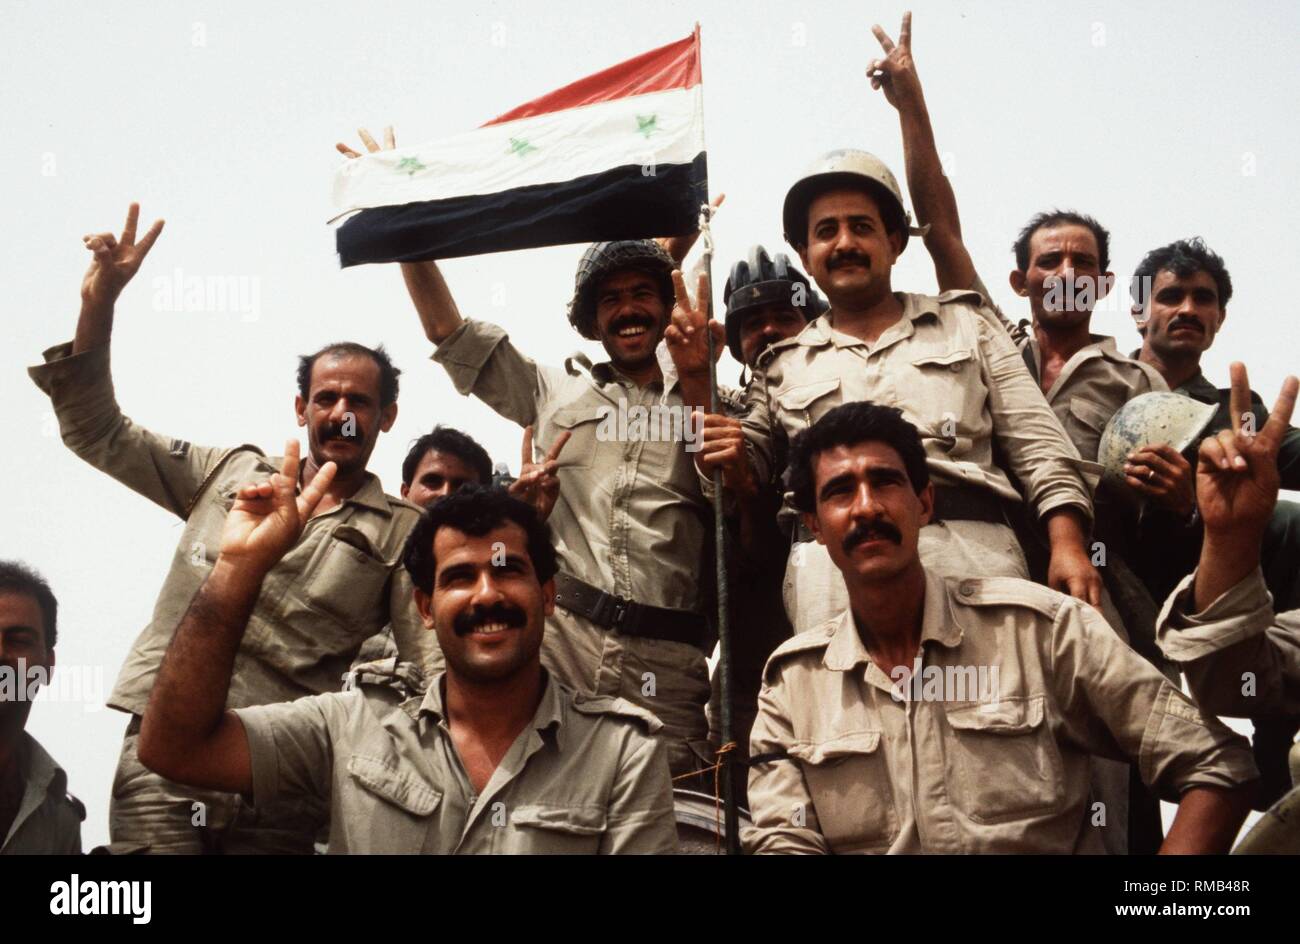 Des soldats de l'armée iraquienne sont certains de leur victoire dans la première guerre du Golfe contre l'Iran. Banque D'Images